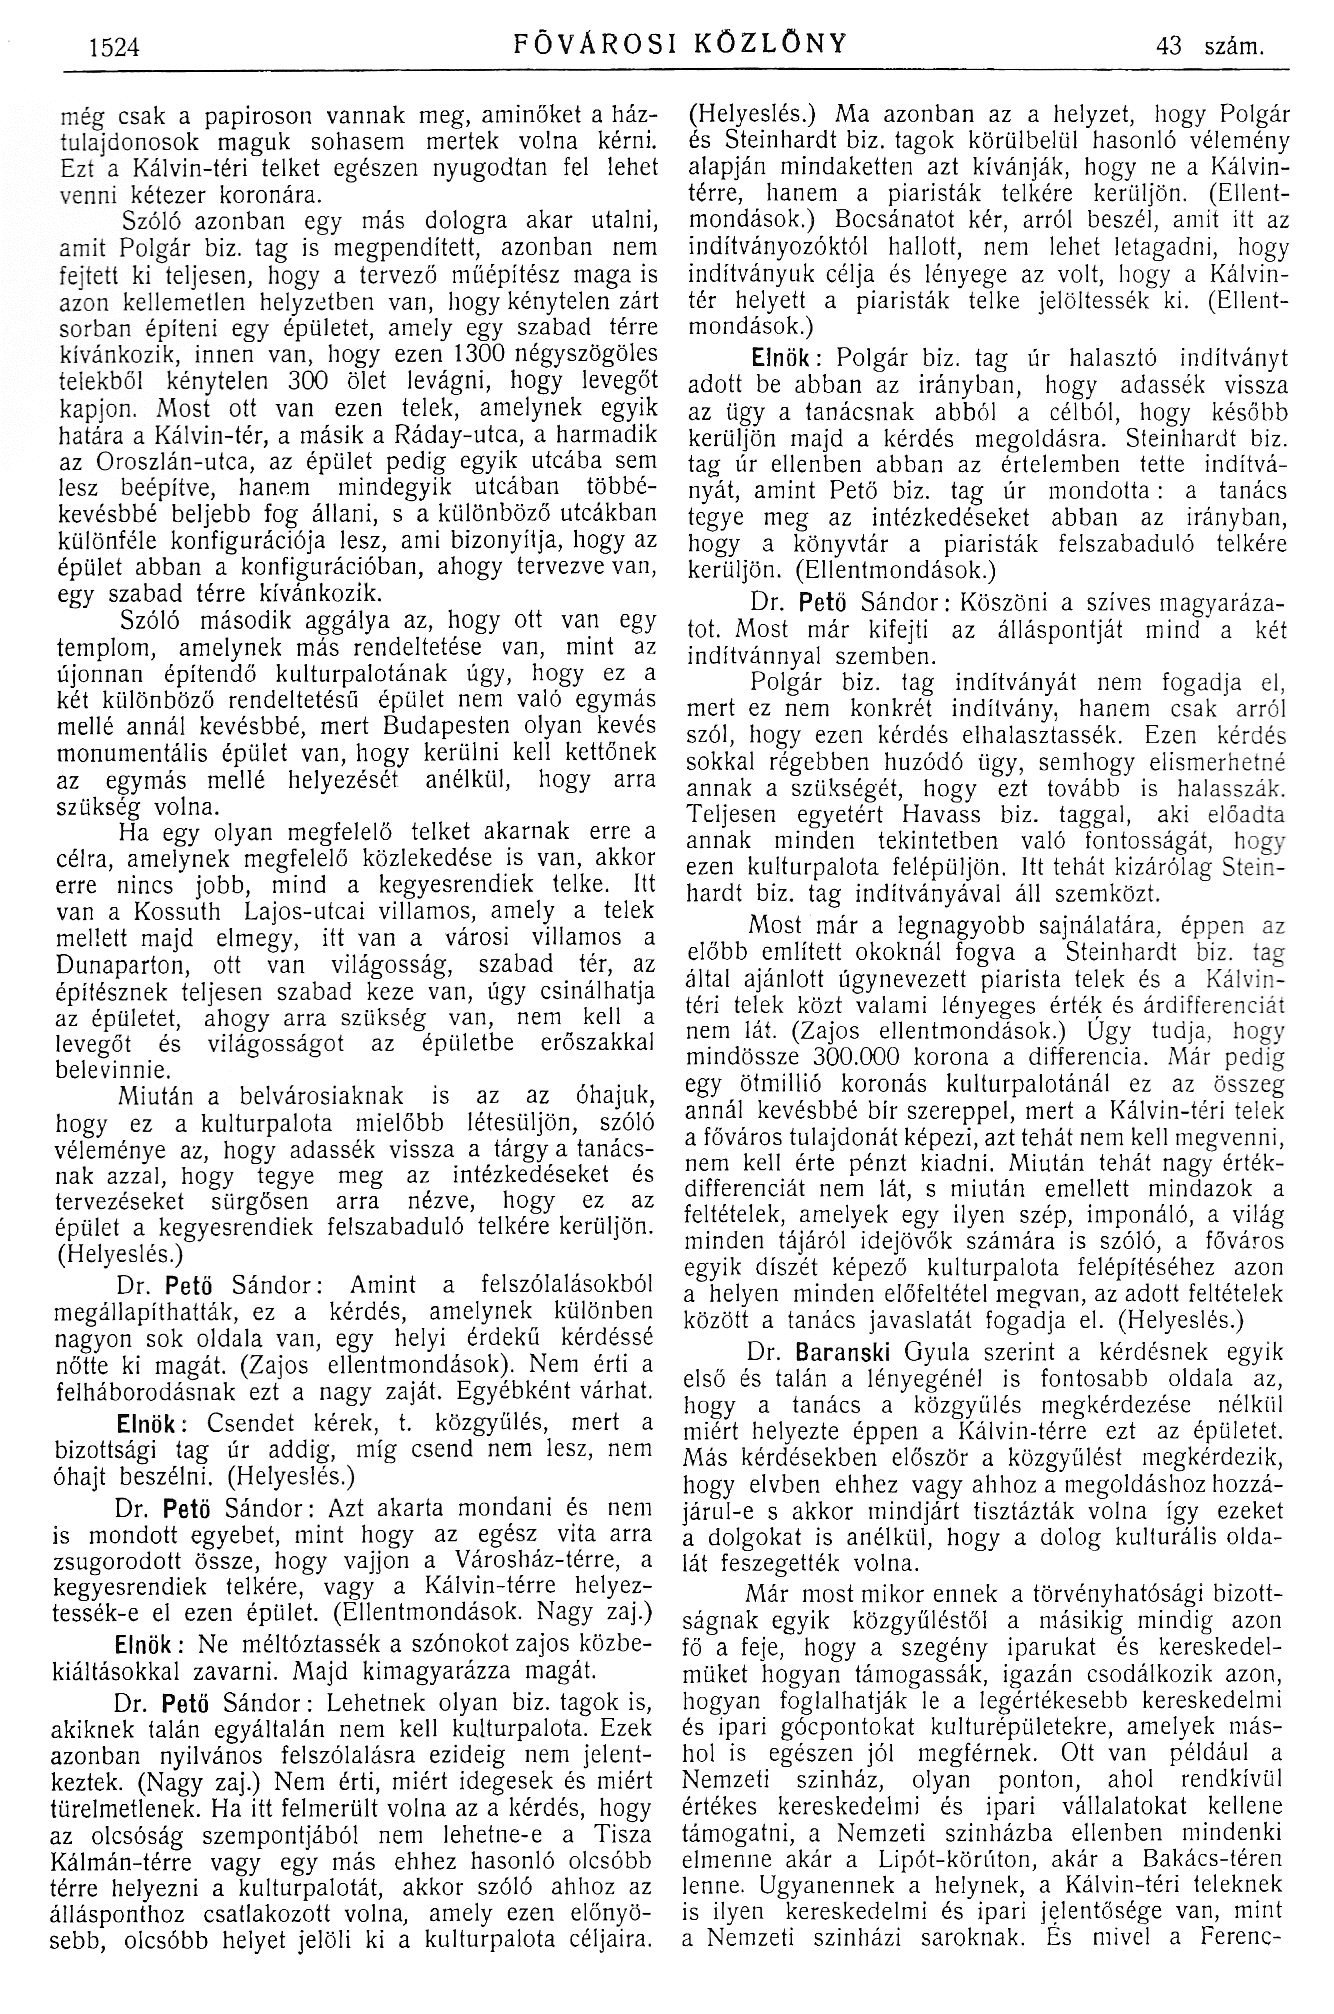 1914_05_27_Fővárosi Közlöny, 1914. 1524. p. 